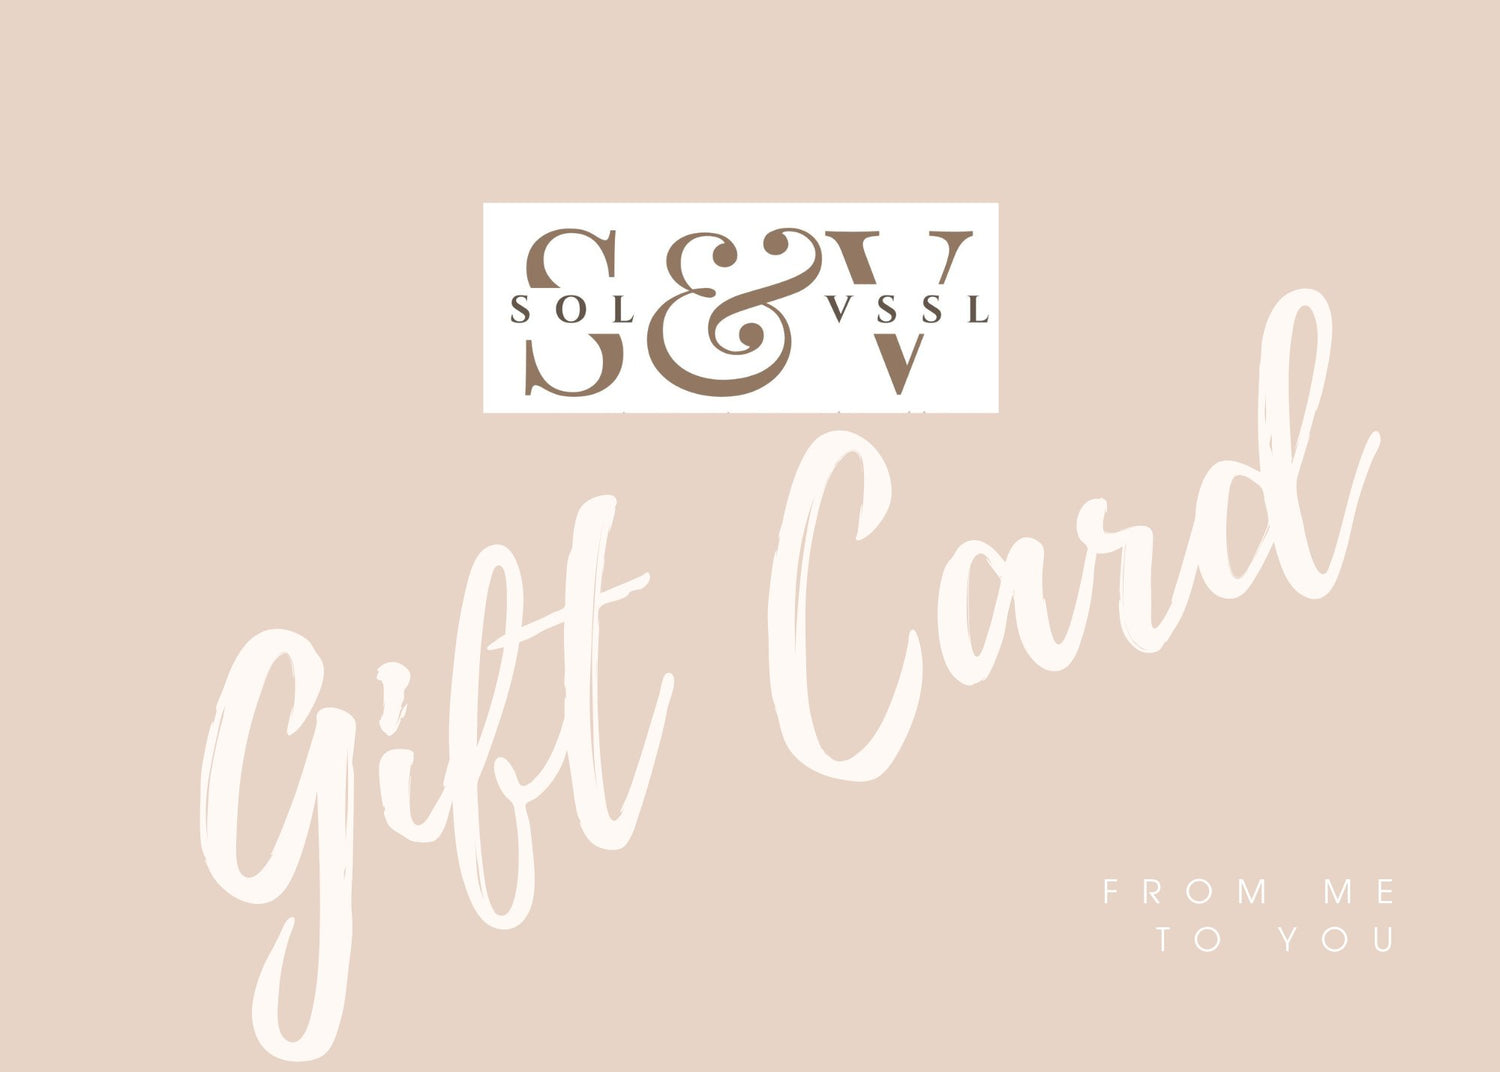 SOL & VSSL Gift Card